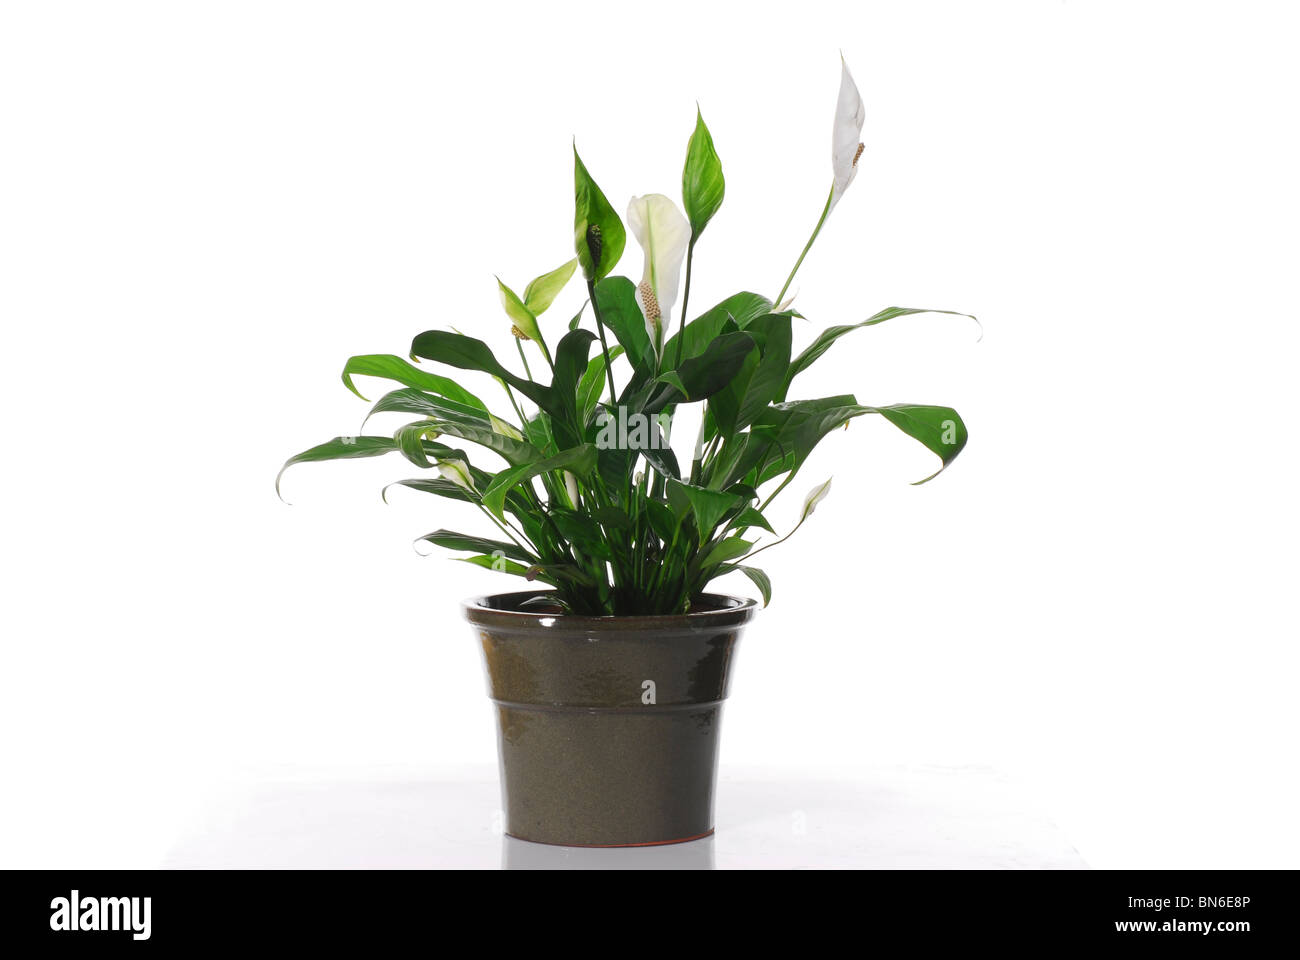 Spathiphyllum cochlearispathum (Peace Lily) on white background Stock Photo